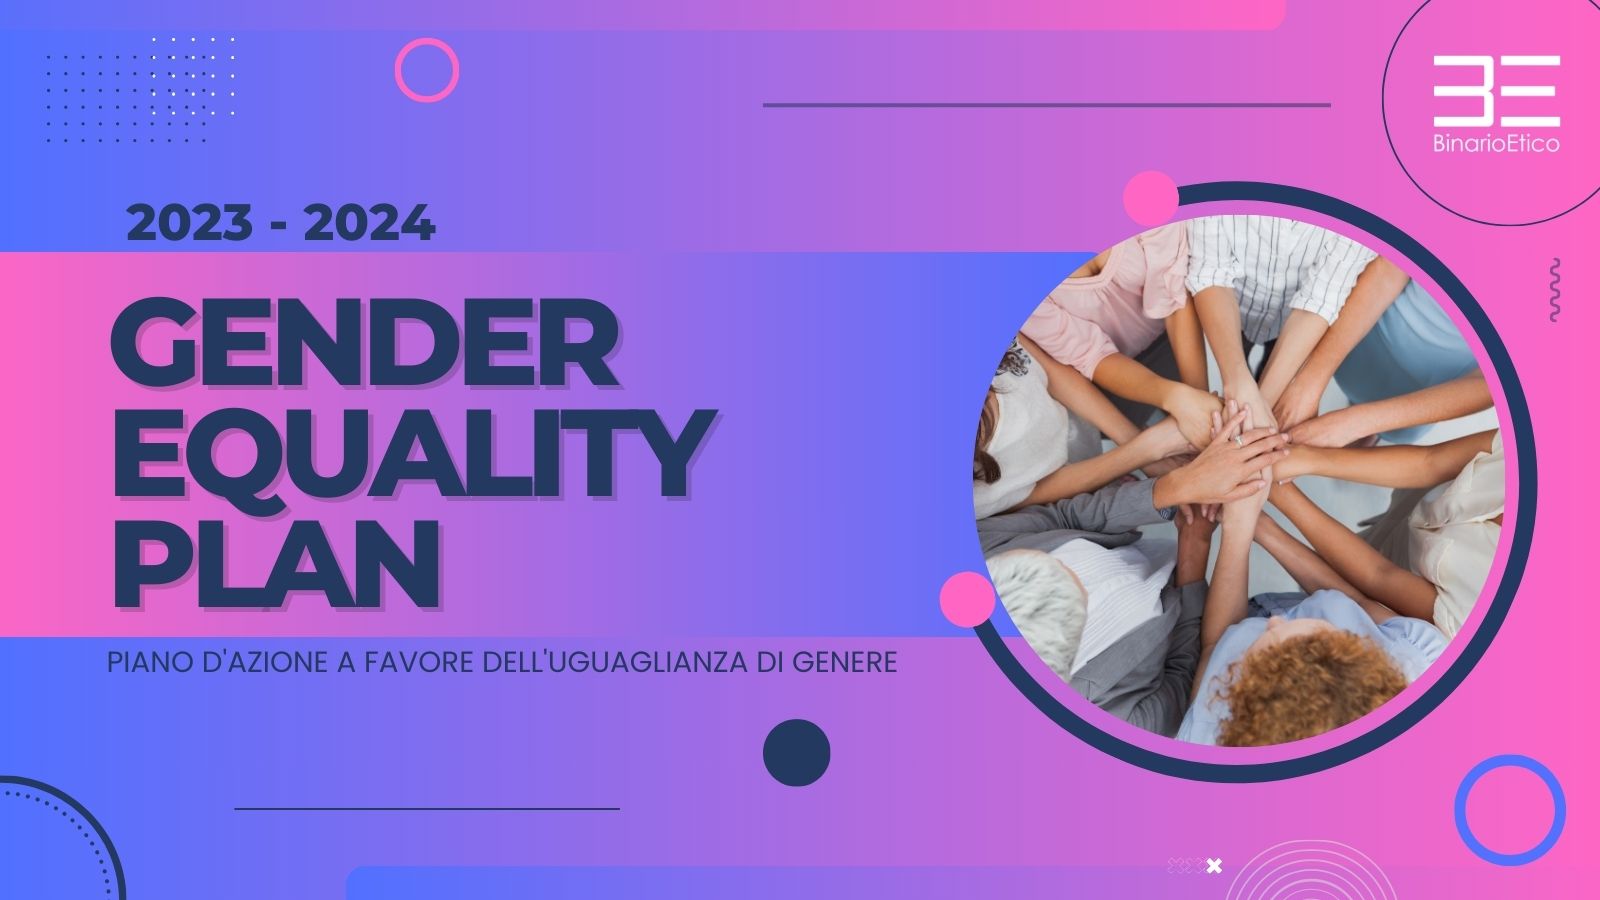 Il nostro impegno per la parità di genere: il nostro GENDER EQUALITY PLAN